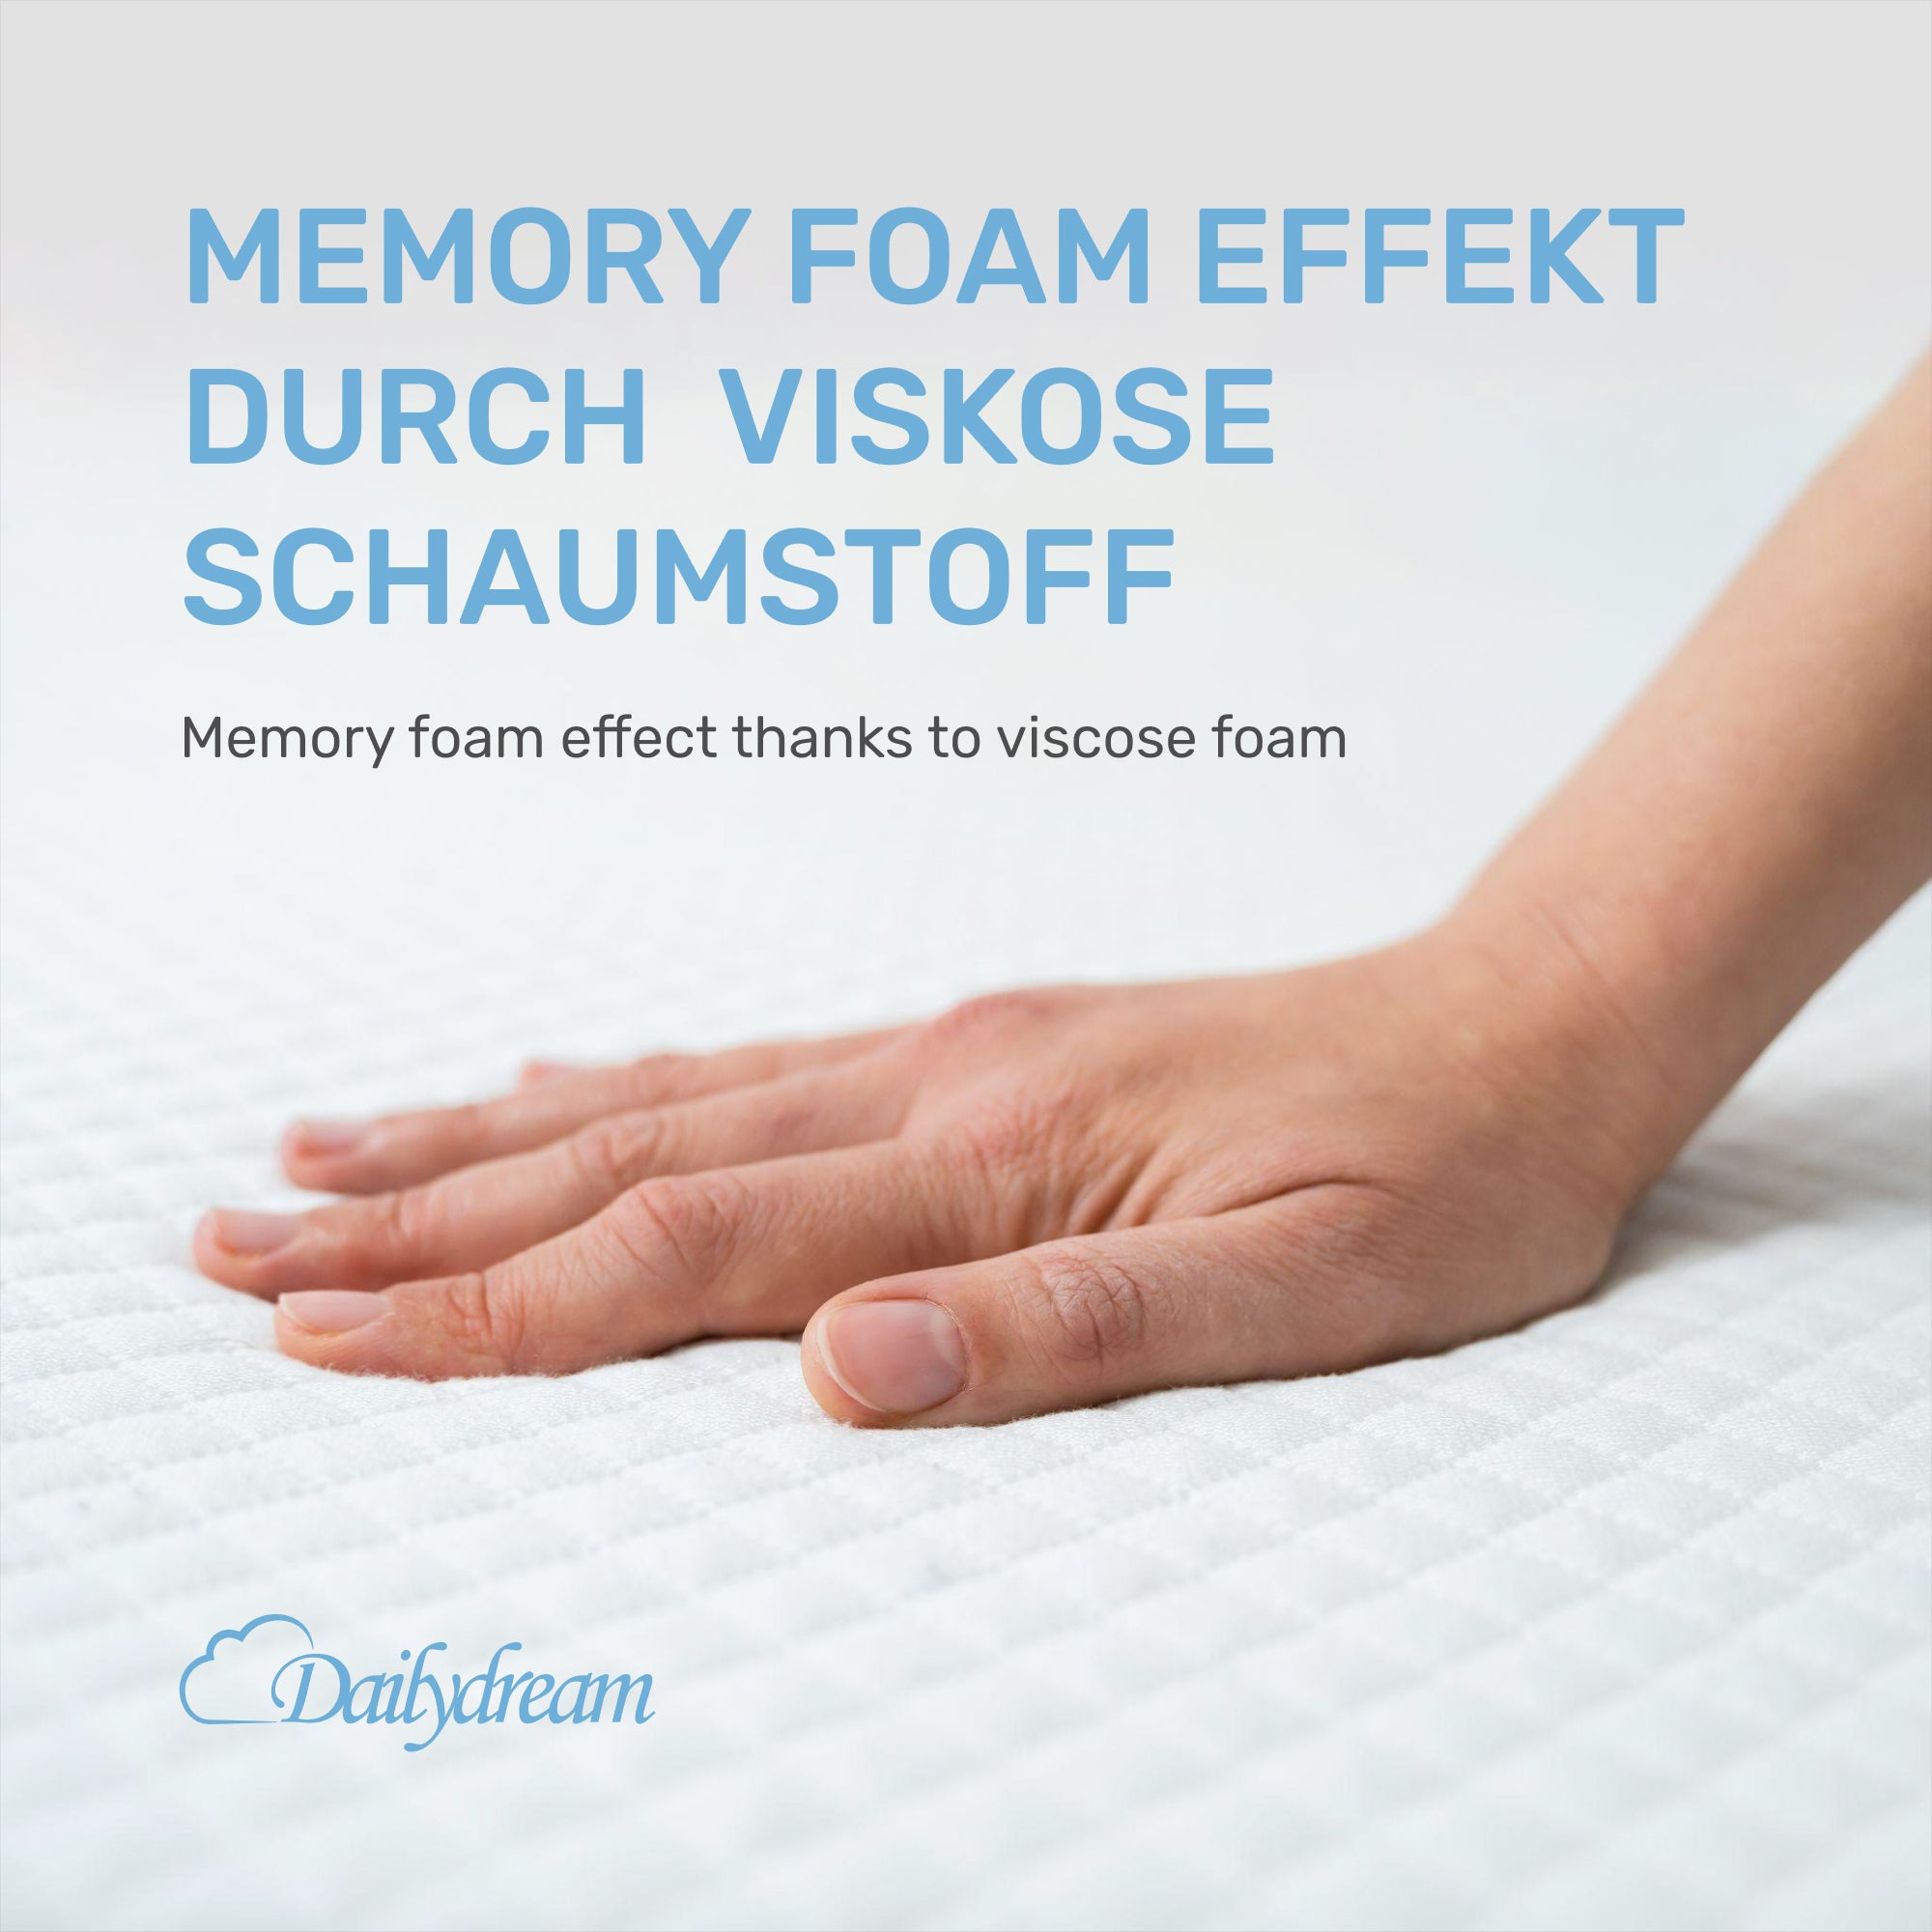 Dailydream viscoelastischer Matratzentopper mit Memory Foam Effekt, Edition "Standard"